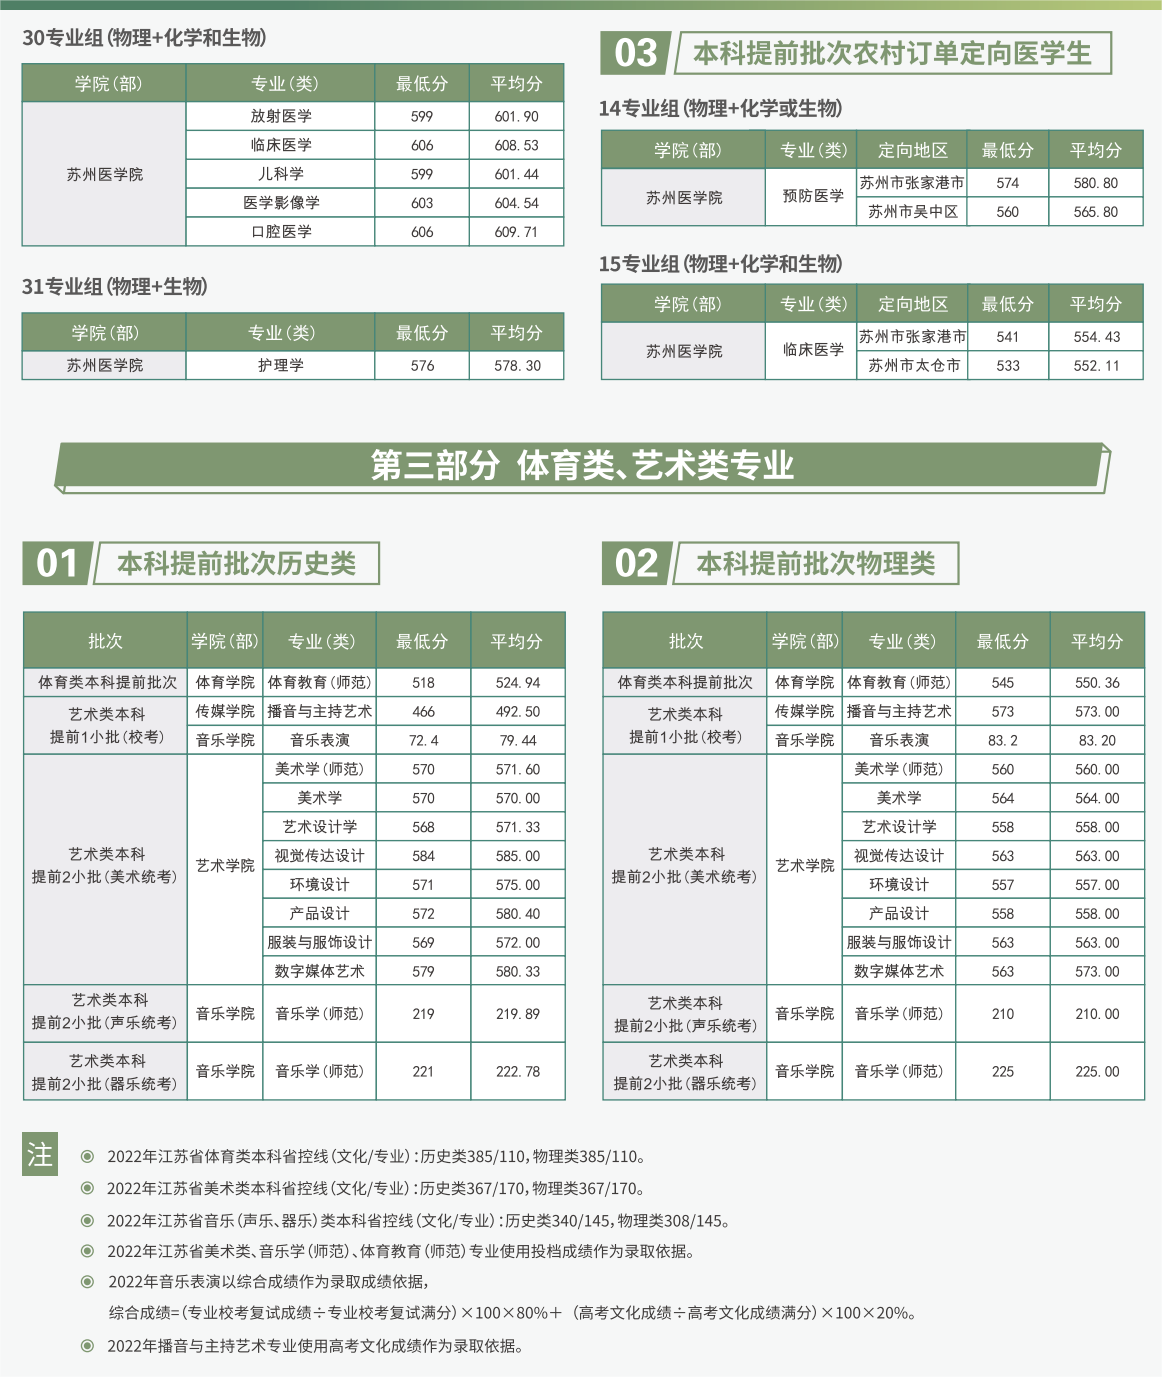 苏州大学2022年各院校专业组在江苏录取分数总体情况一览表